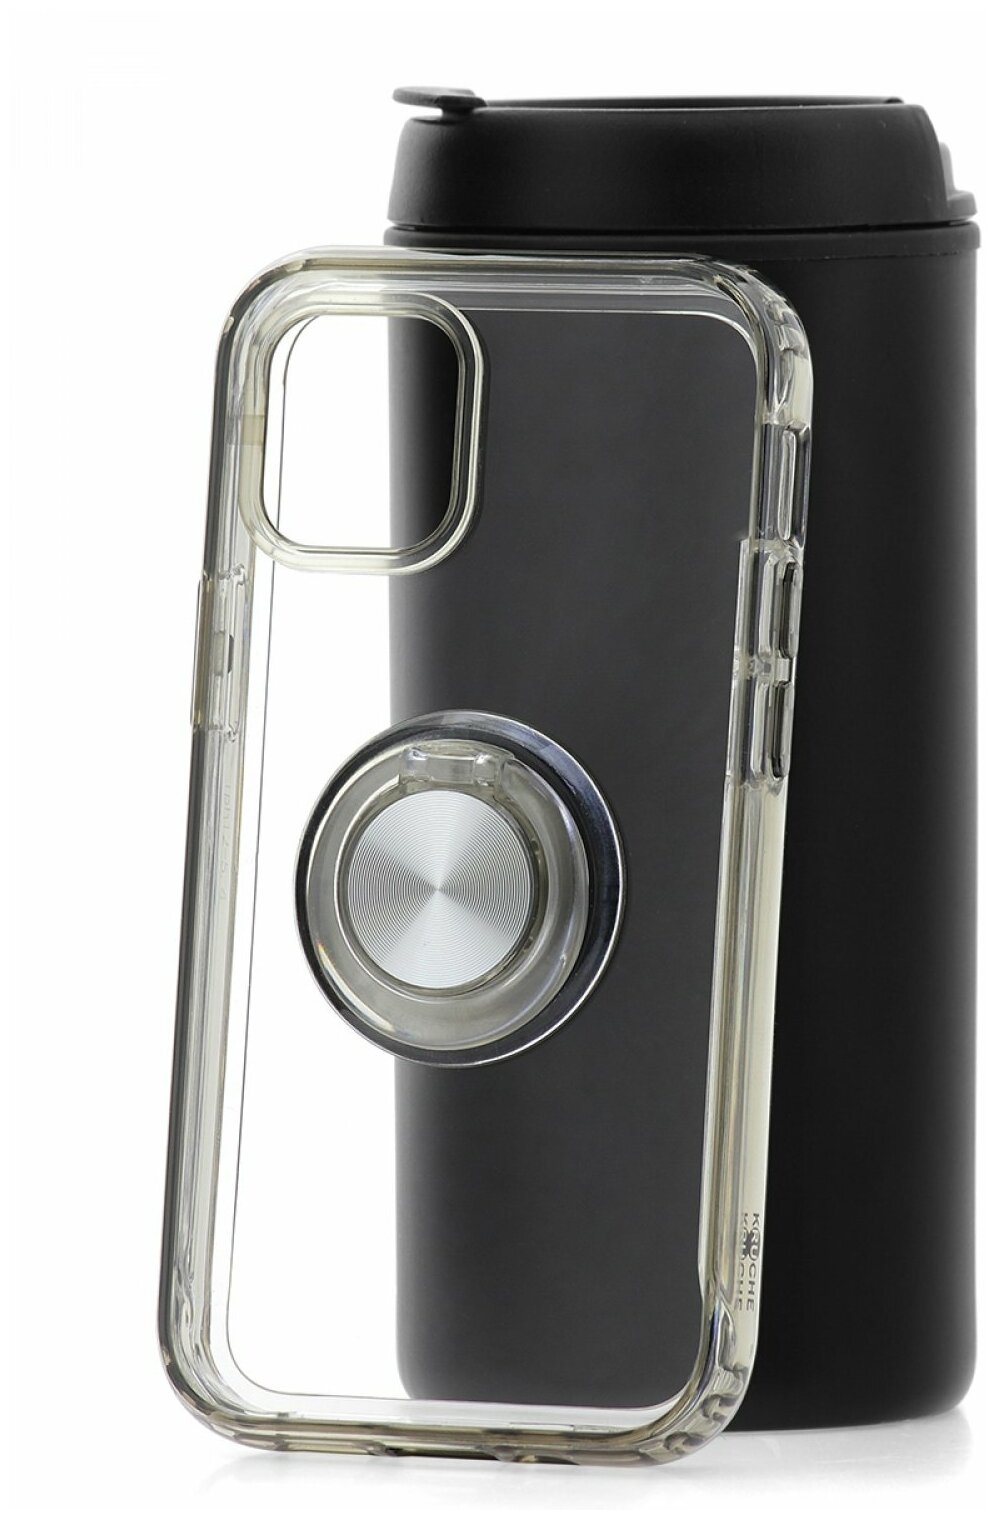 Чехол с кольцом для Apple iPhone 12 mini КRUЧЕ Ring Black, силиконовый бампер с защитой камеры, пластиковый защитный кейс, прозрачная накладка